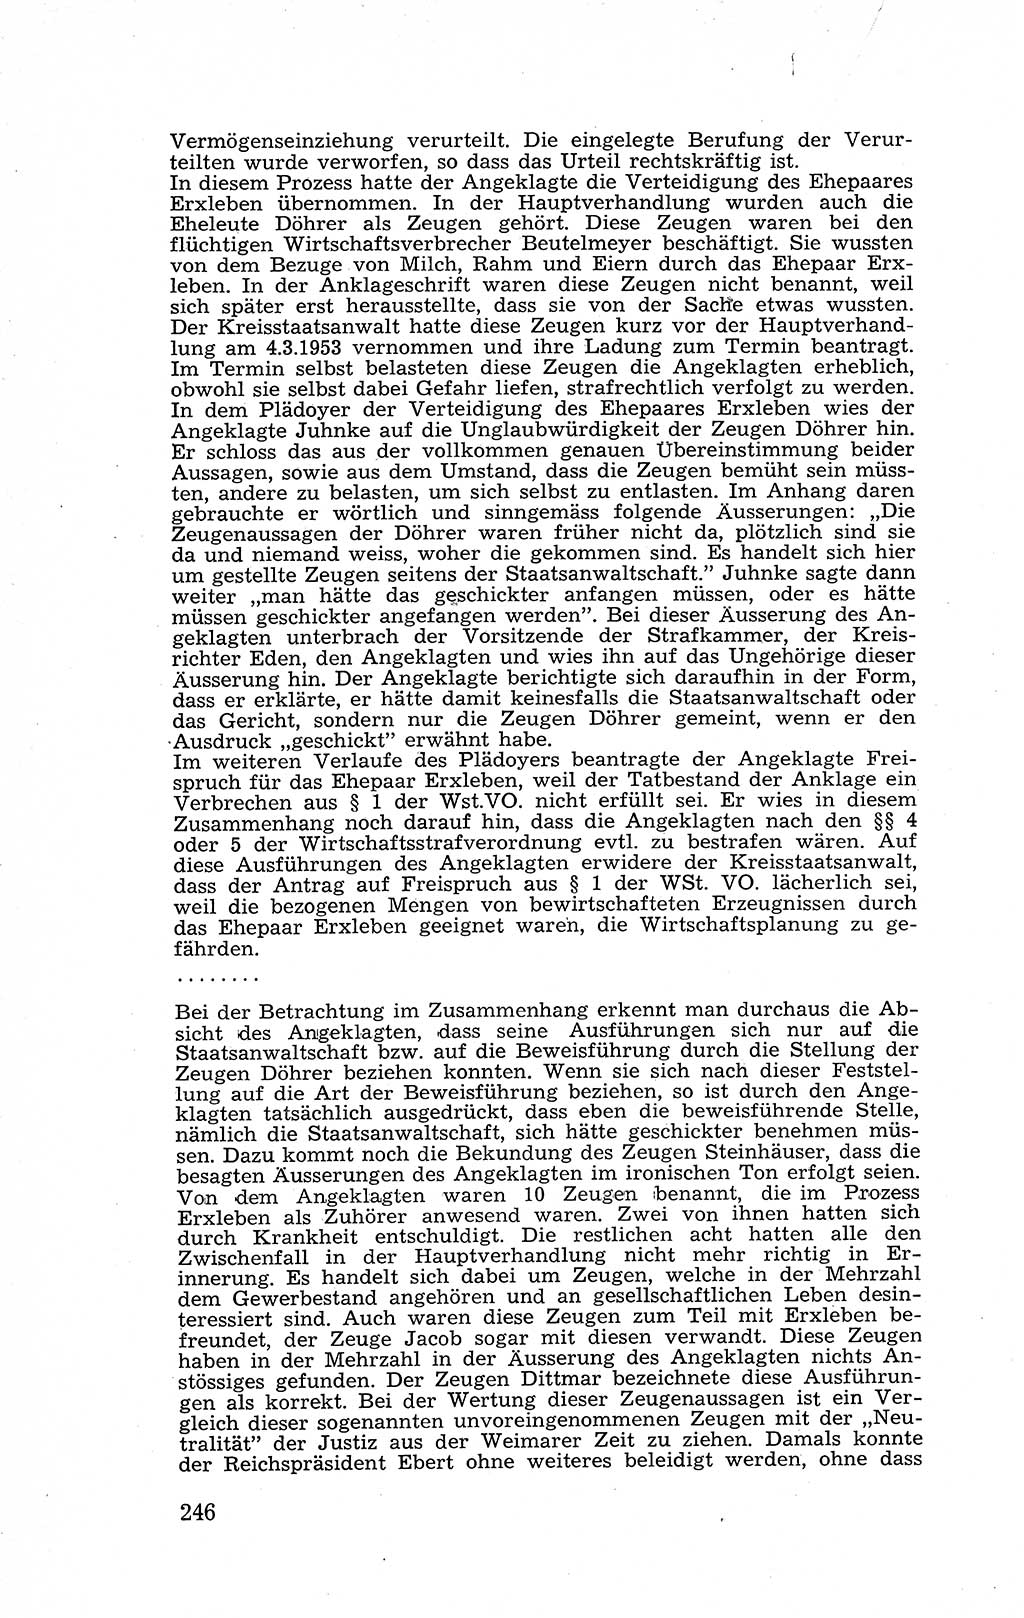 Recht in Fesseln, Dokumente, Internationale Juristen-Kommission [Bundesrepublik Deutschland (BRD)] 1955, Seite 246 (R. Dok. IJK BRD 1955, S. 246)